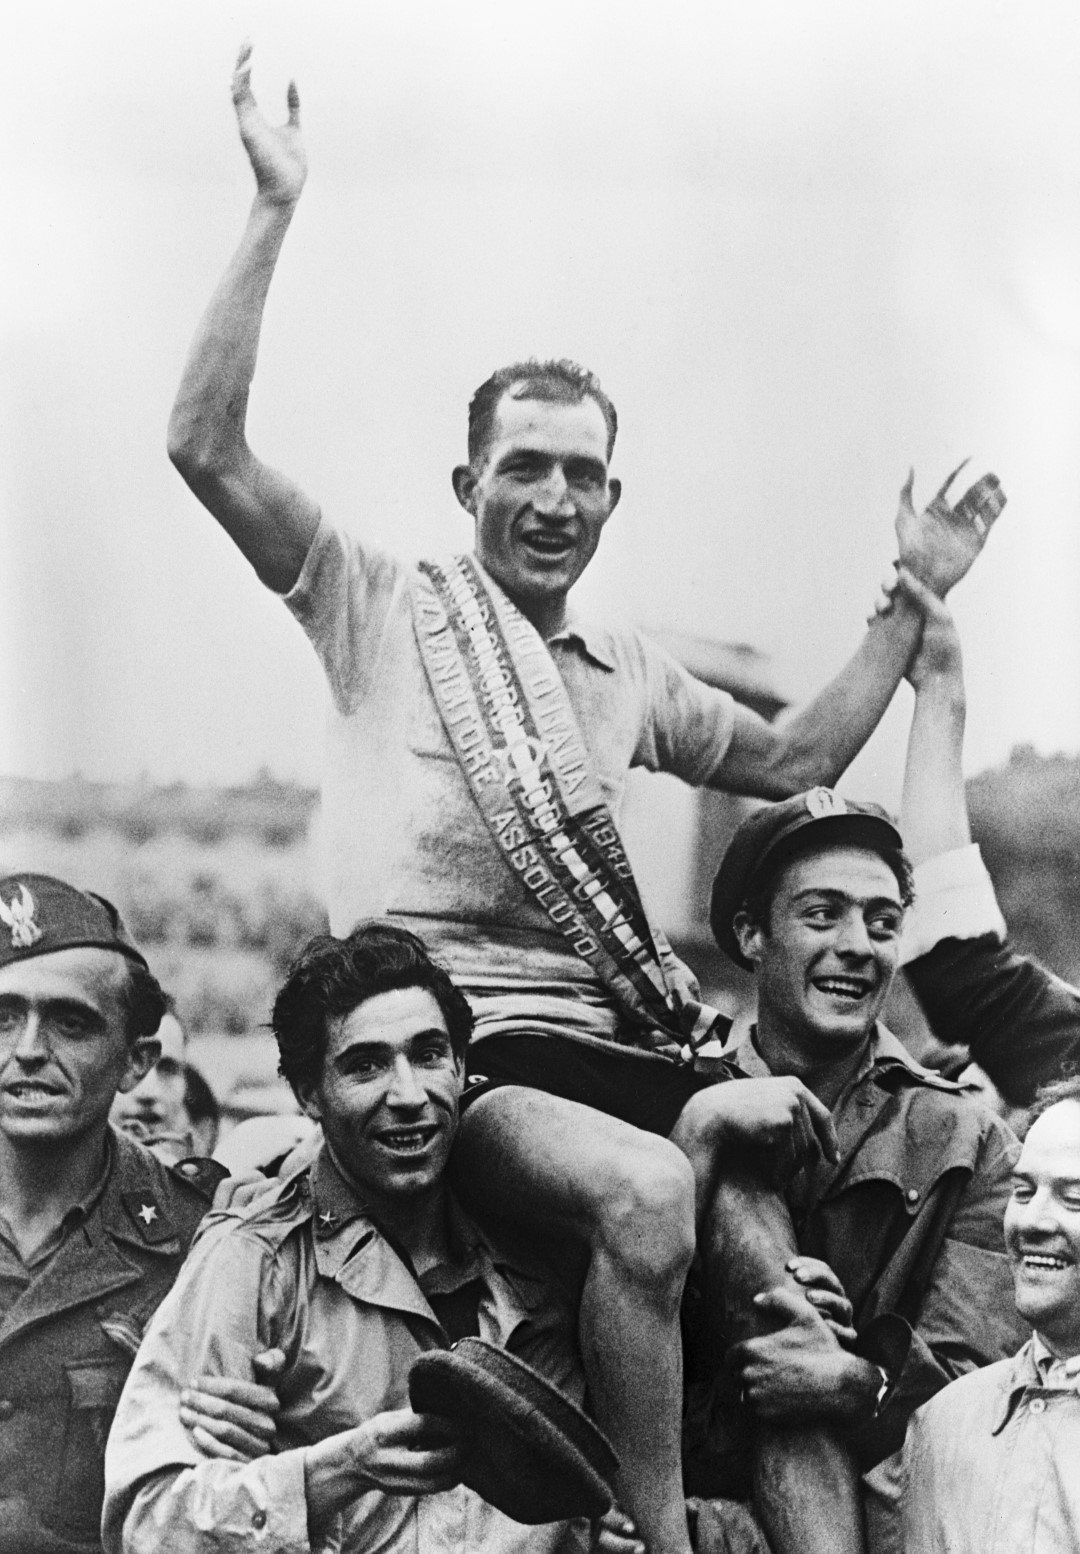 Джино Бартали става първият следвоенен победител през 1946 г., след като Джиро няма от 1940-а до 1945-а